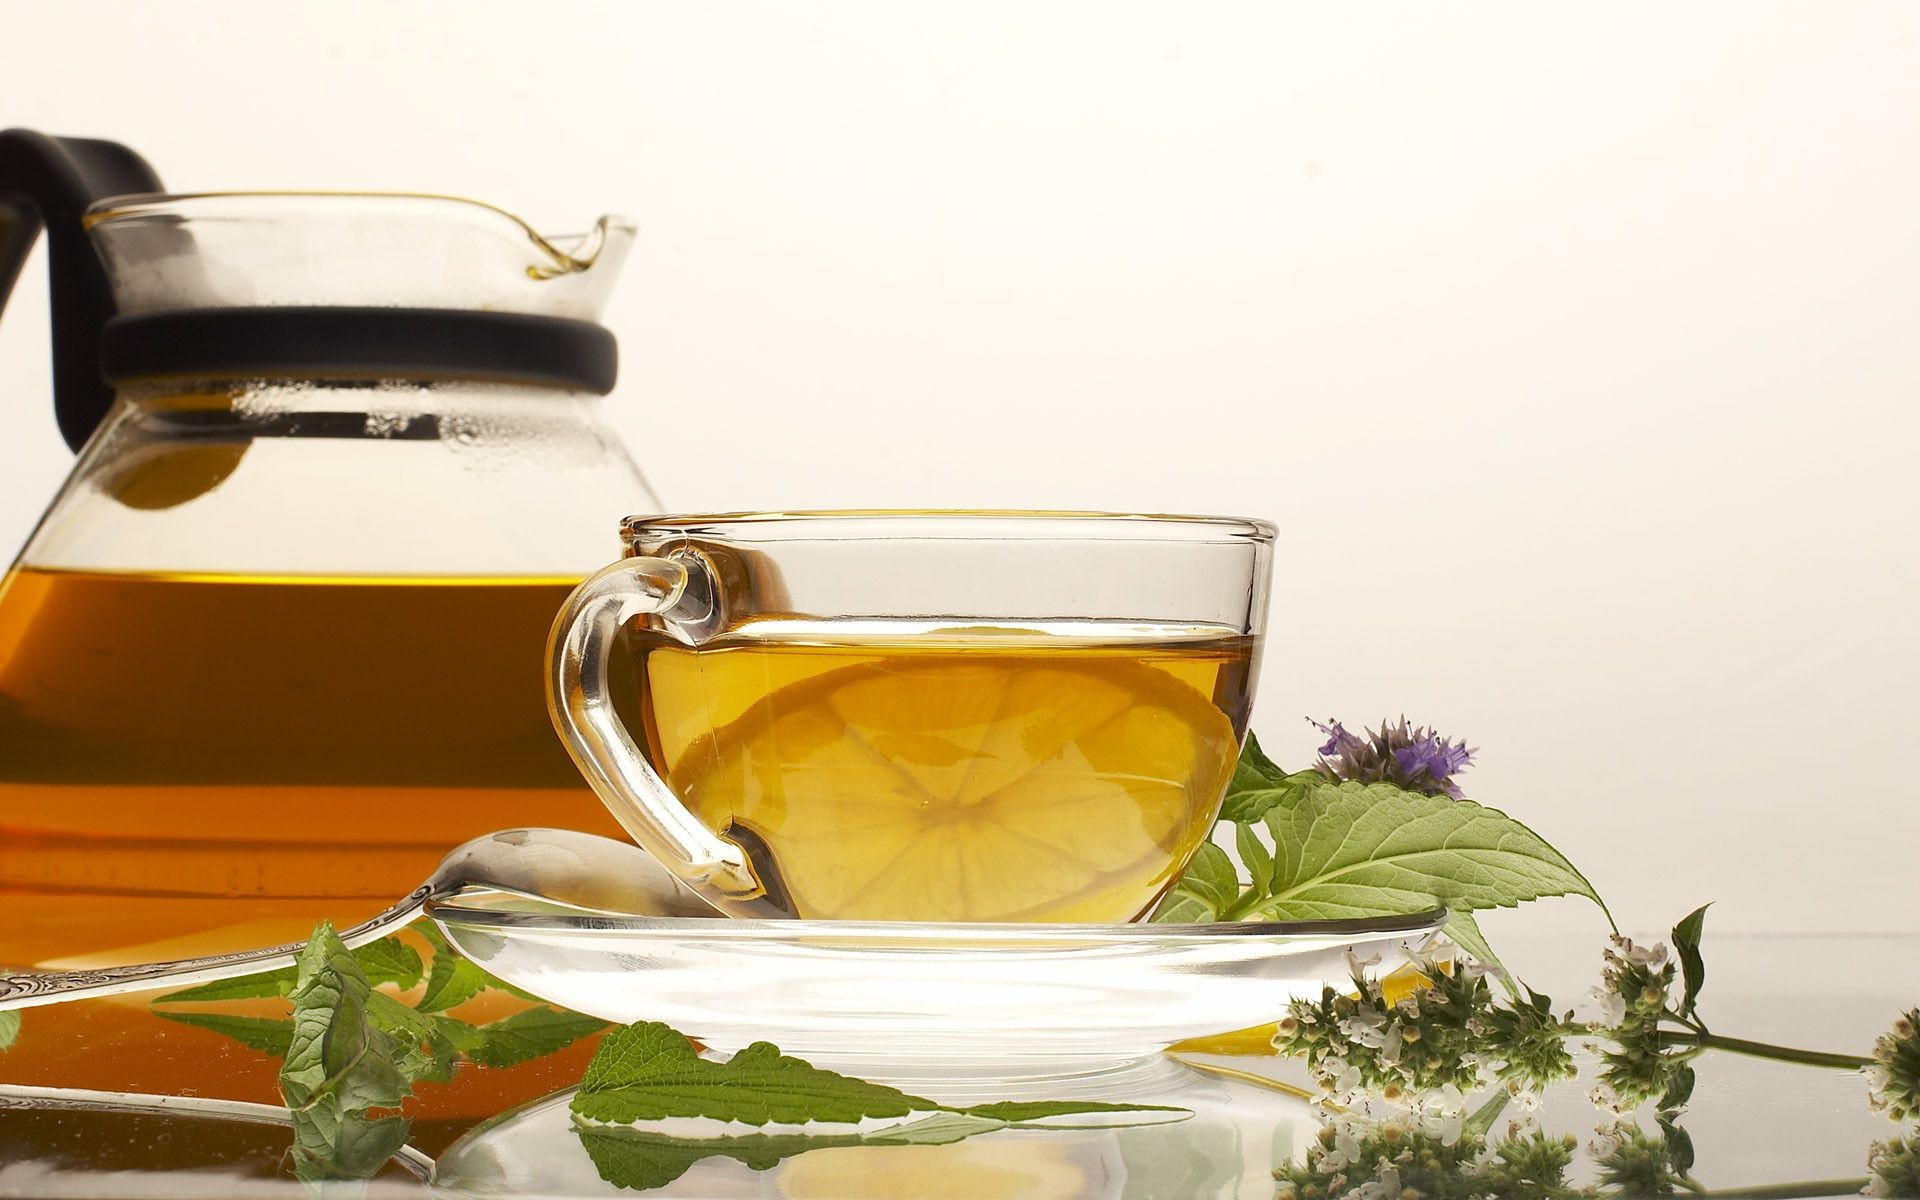 чай пить кубок травы чашка травяной горячая лист медицина еда натюрморт таблица здоровый стекло завтрак образ жизни чаша рабочего стола жидкость